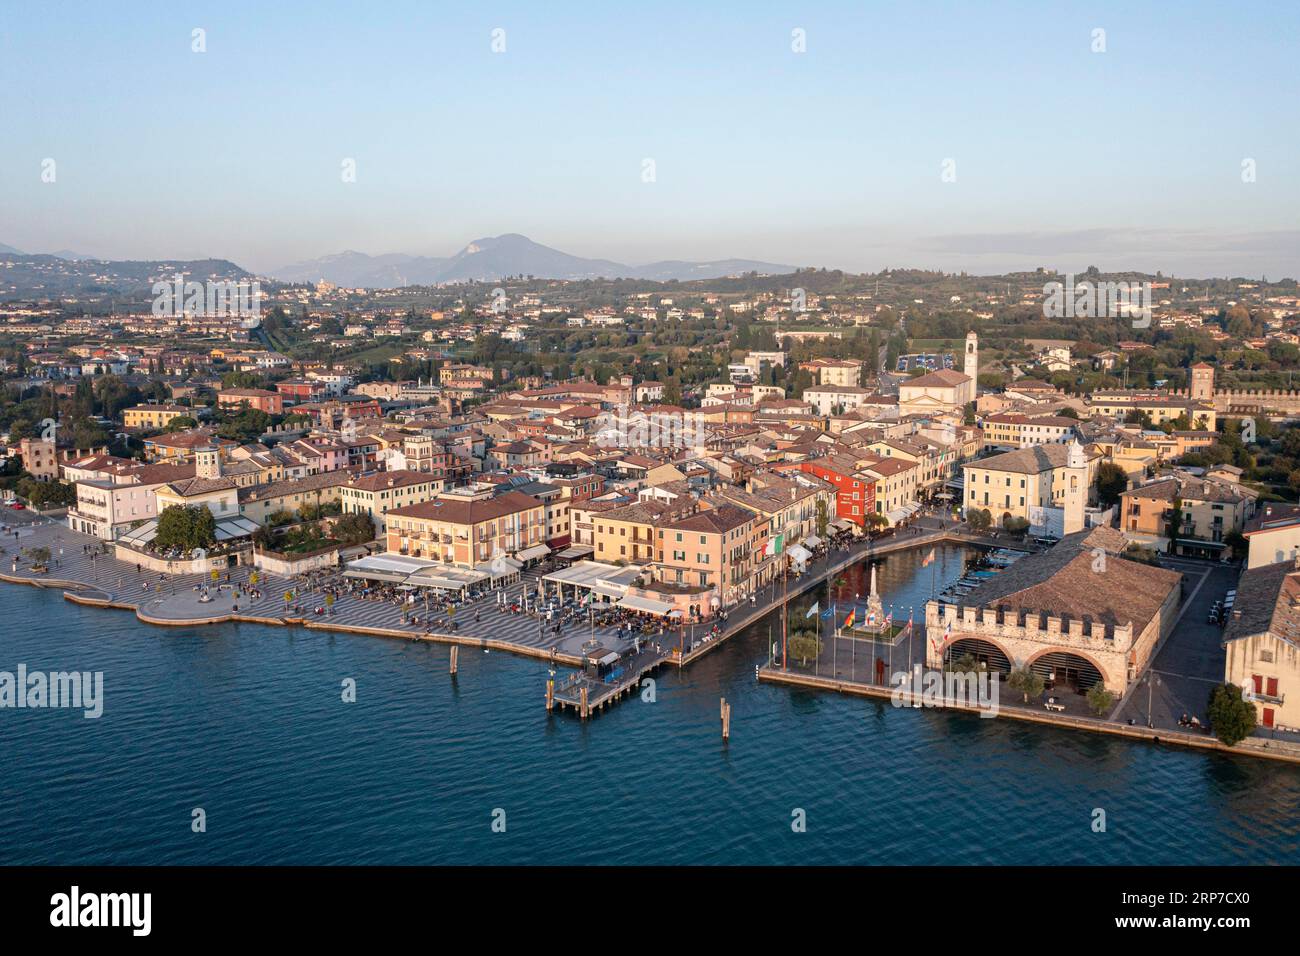 Vista aerea, Lazise con il centro storico, provincia di Verona, lago di Garda, Italia Foto Stock